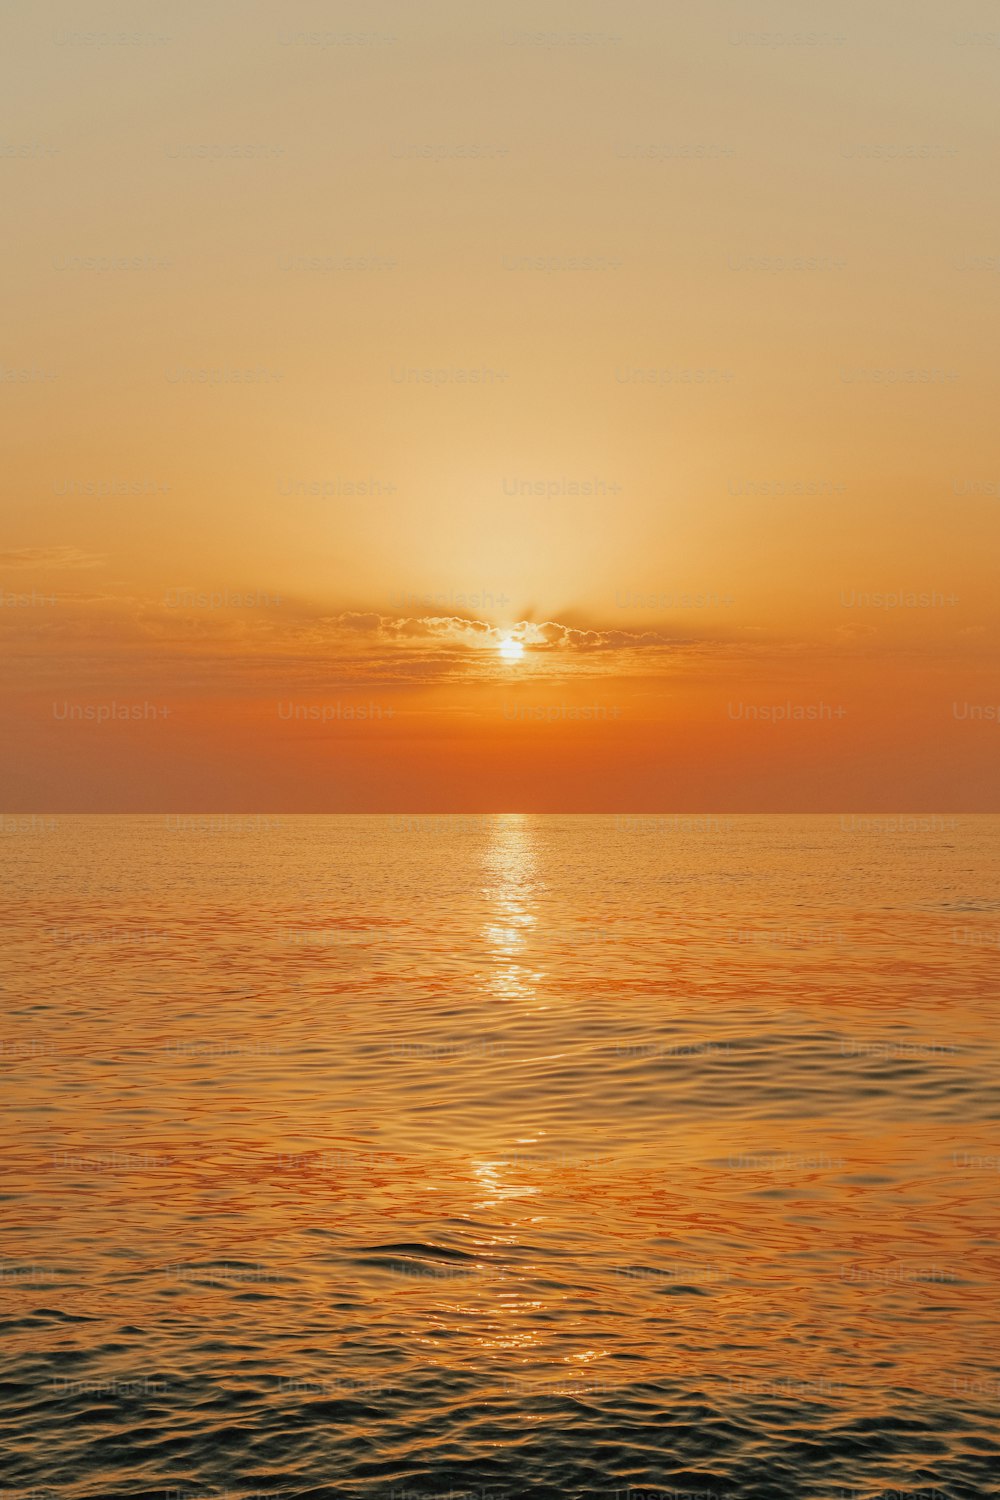 Il sole sta tramontando sull'oceano in una giornata limpida